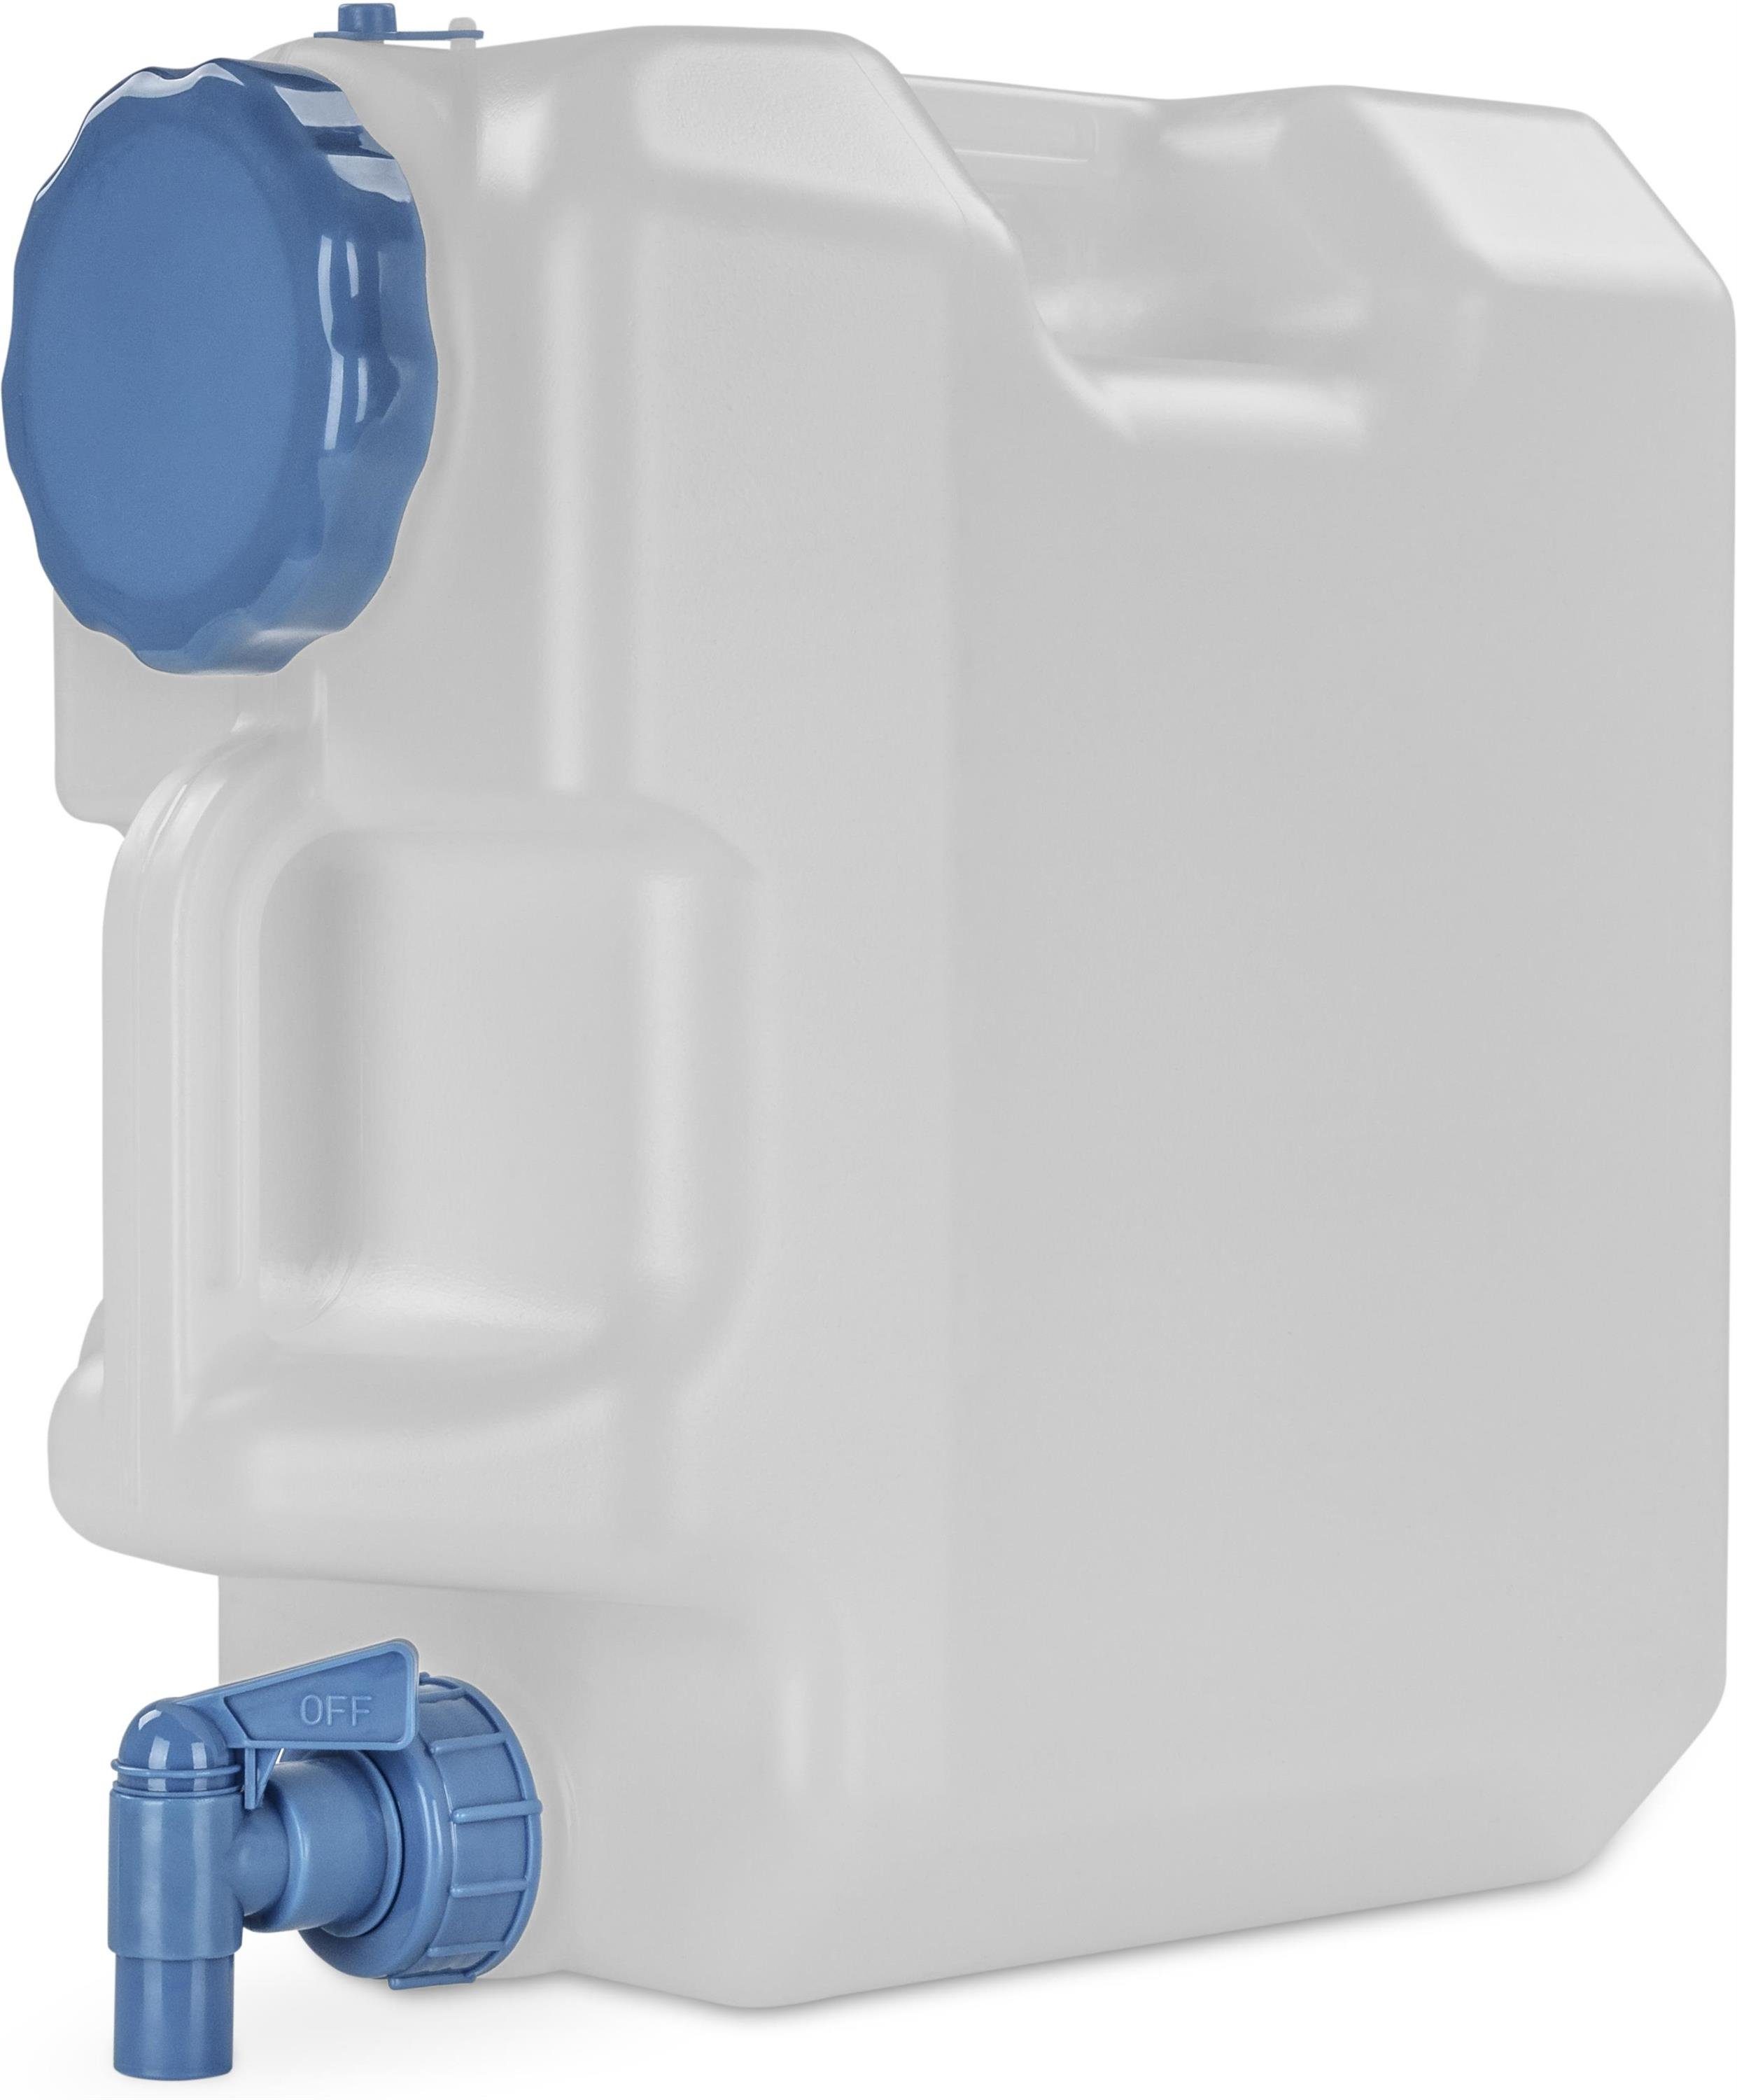 Wasserkanister Eco 15L mit Hahn Camping Garten Wassertank Trink-Wasser-Behälter 